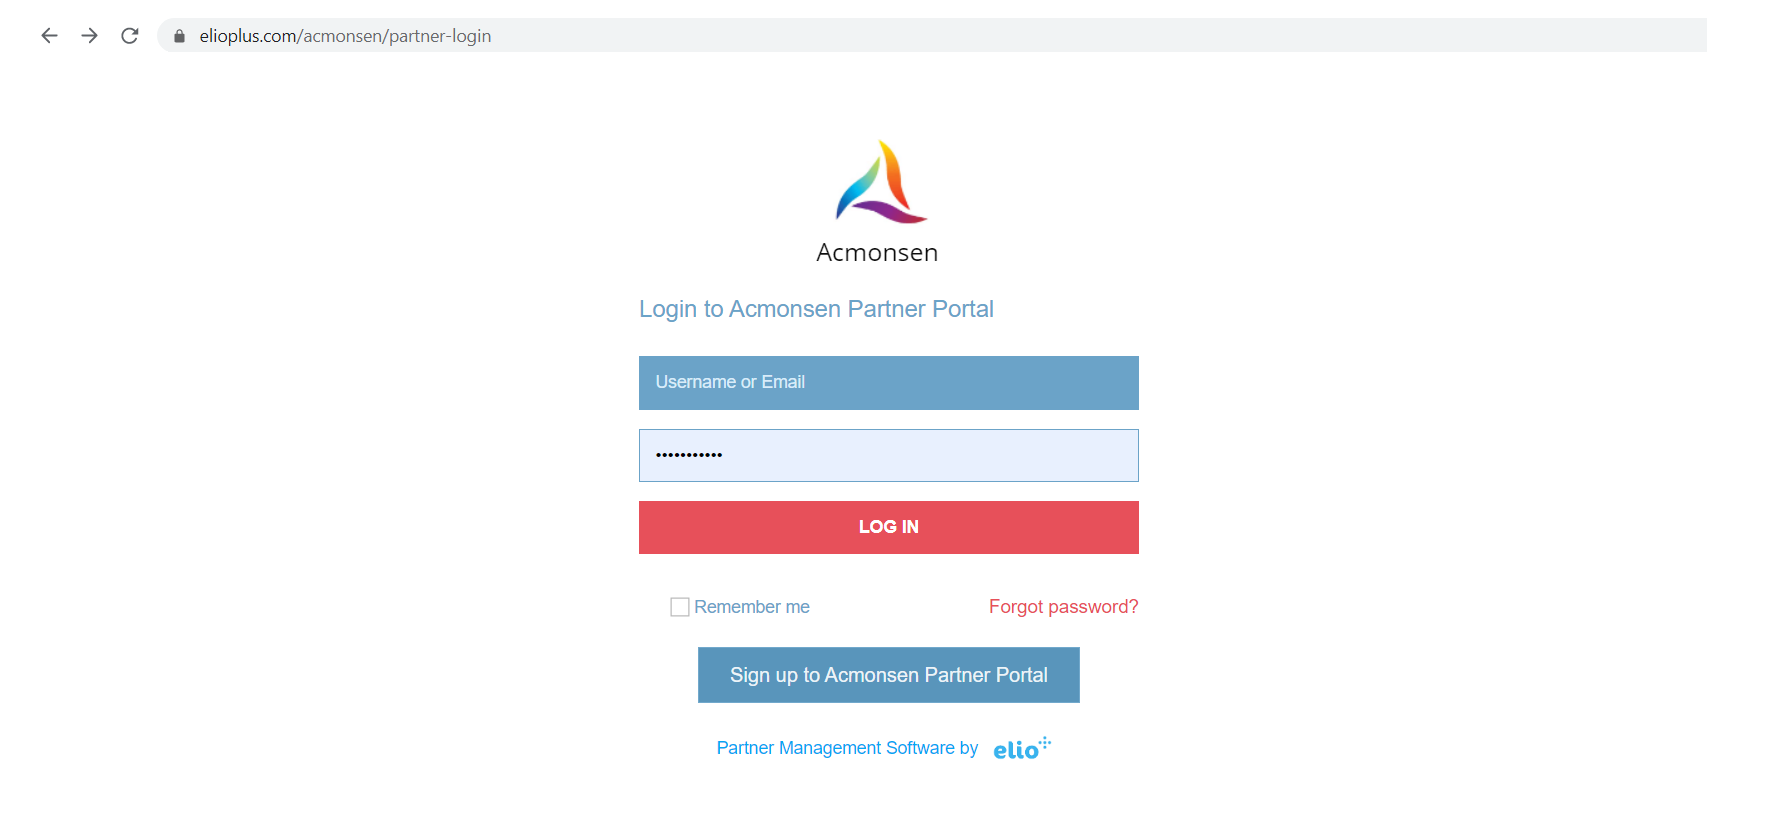 2. Vendor's partner portal unique URL page